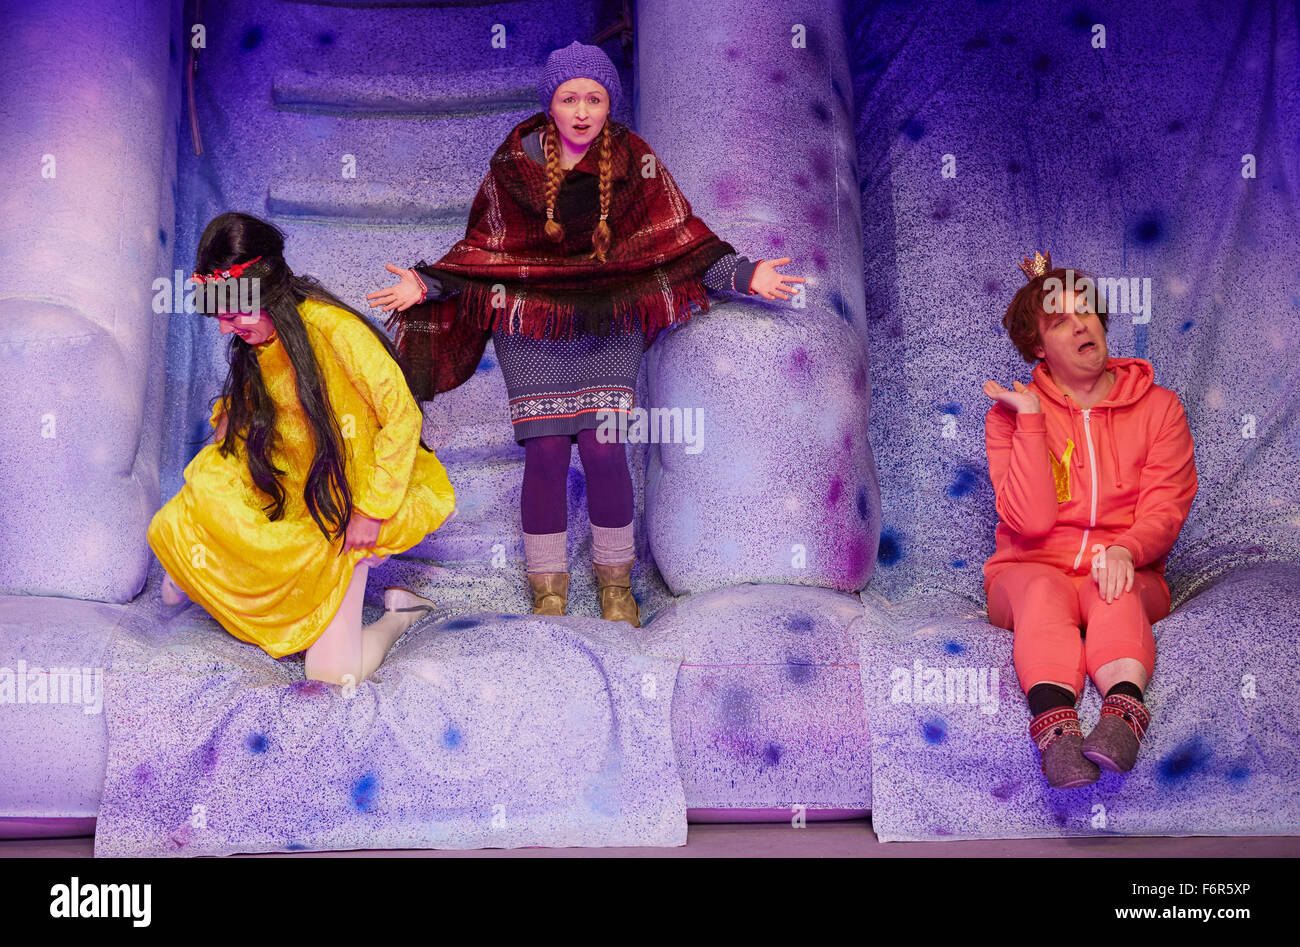 Hambourg, Allemagne. 18 Nov, 2015. Valerija acteurs comme Laubach la princesse (L-R), Alexandra Kurzeja que Gerda, et Mario Klampfl comme le Prince sur scène lors d'une répétition de la presse "La reine des neiges' dans l'Komoedie Winterhuder Faehrhaus Theatre à Hambourg, Allemagne, 18 novembre 2015. La première de The Andersen conte de fée est 22 novembre 2015. Photo : GEORG WENDT/dpa/Alamy Live News Banque D'Images